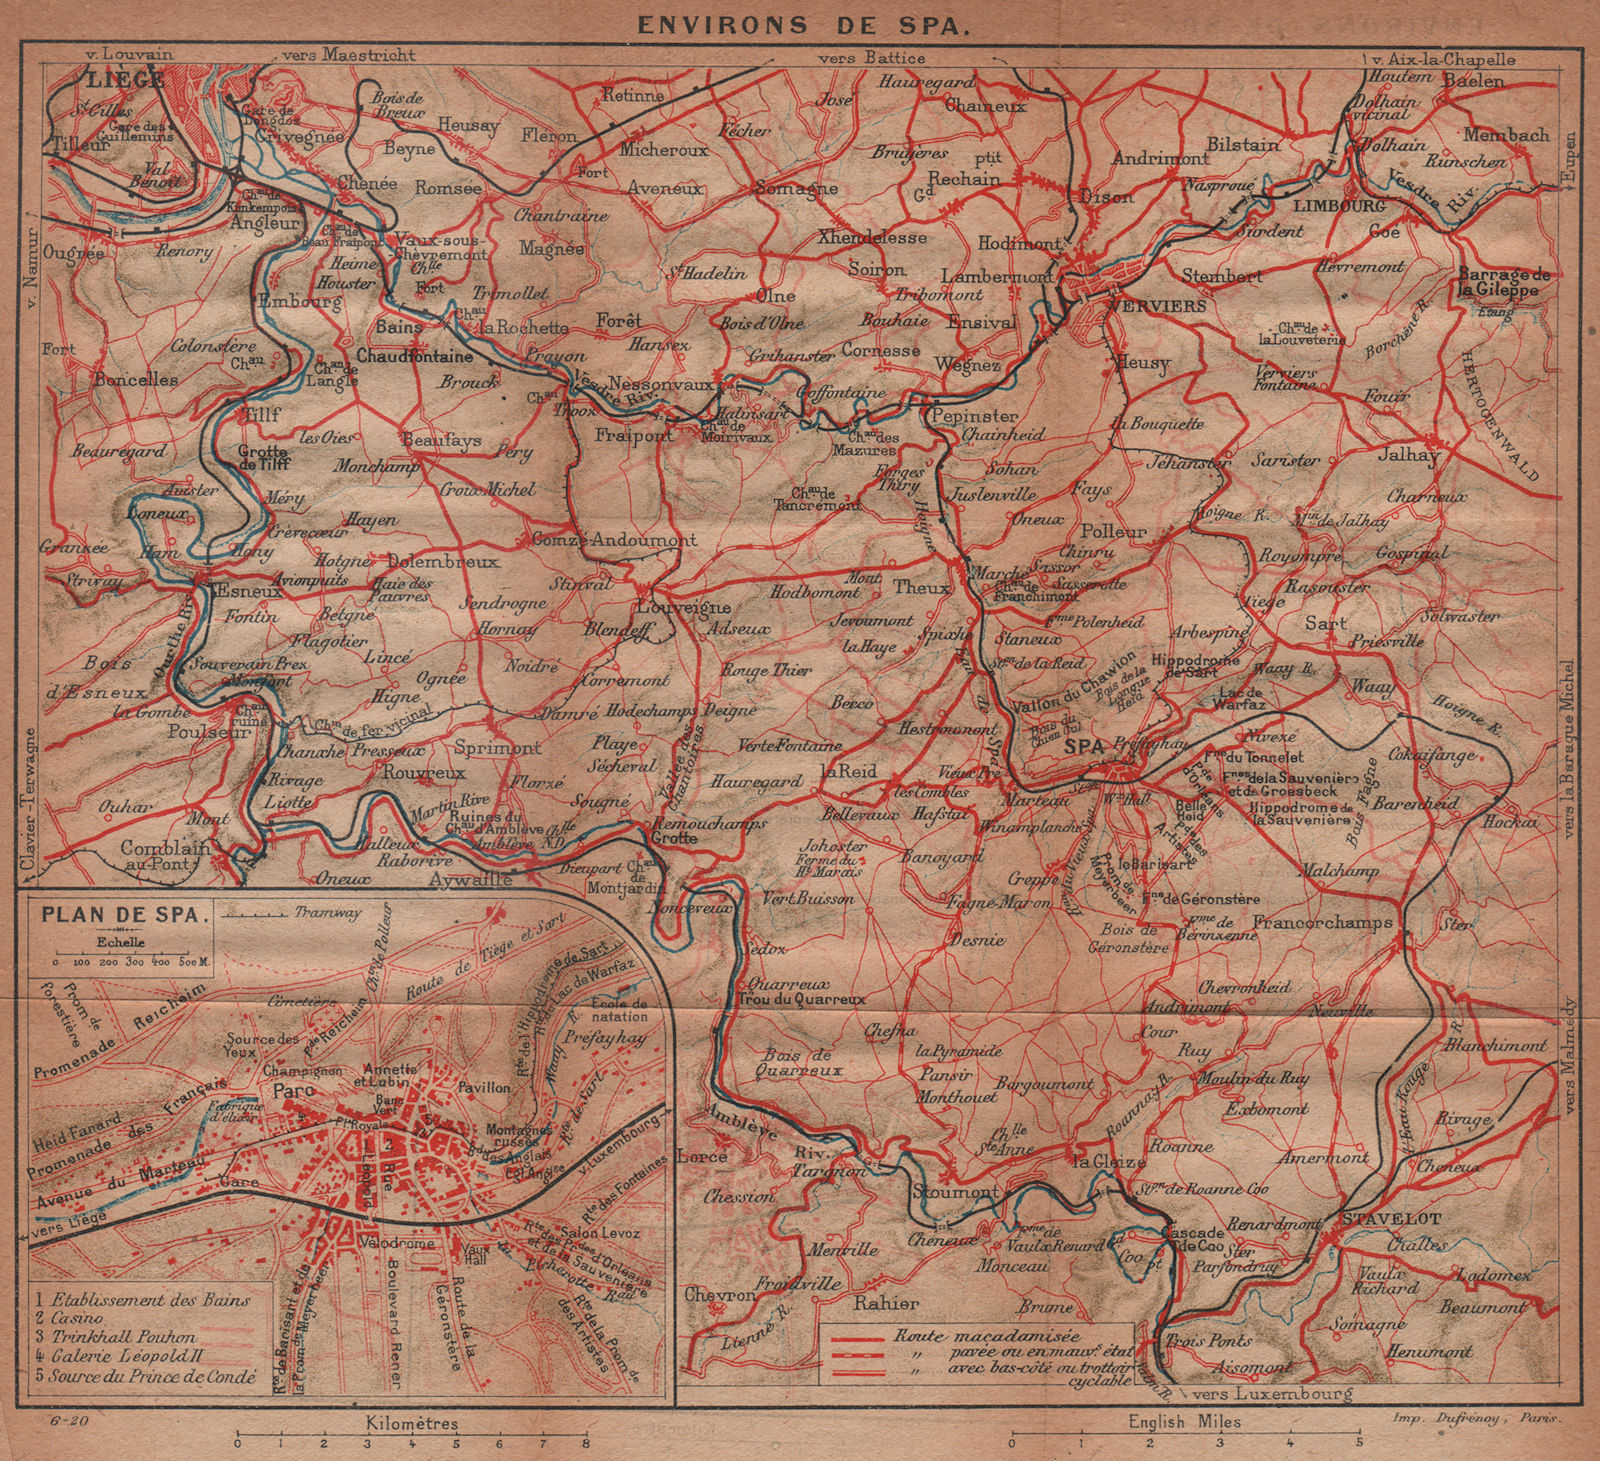 SPA BELGIUM ENVIRONS. Liège Liège Verviers. Vintage map plan. Belgium 1920